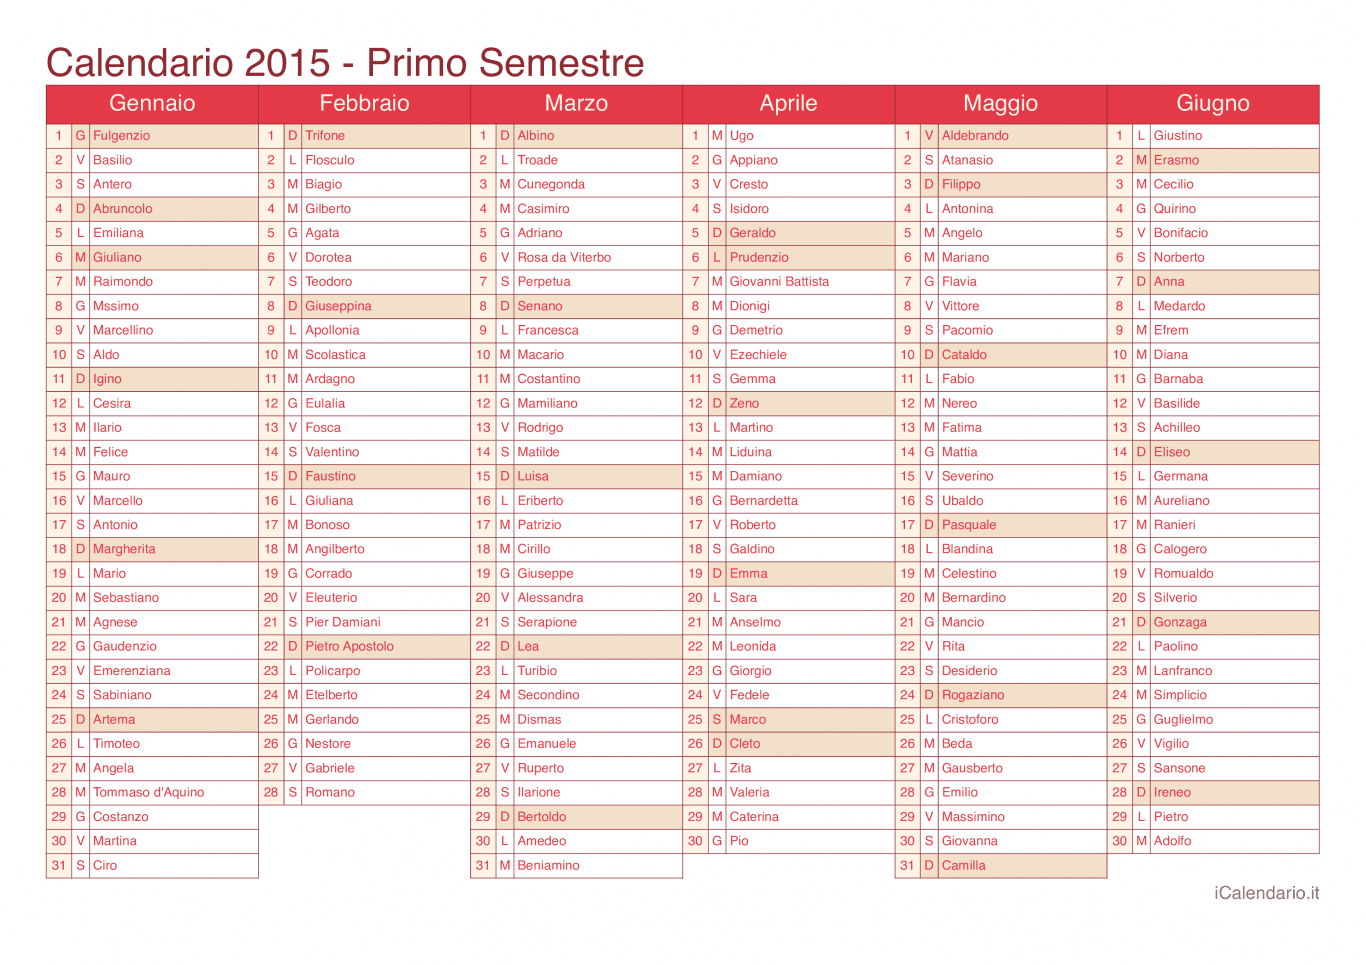 Calendario semestrale 2015 con santi e festivi - Cherry